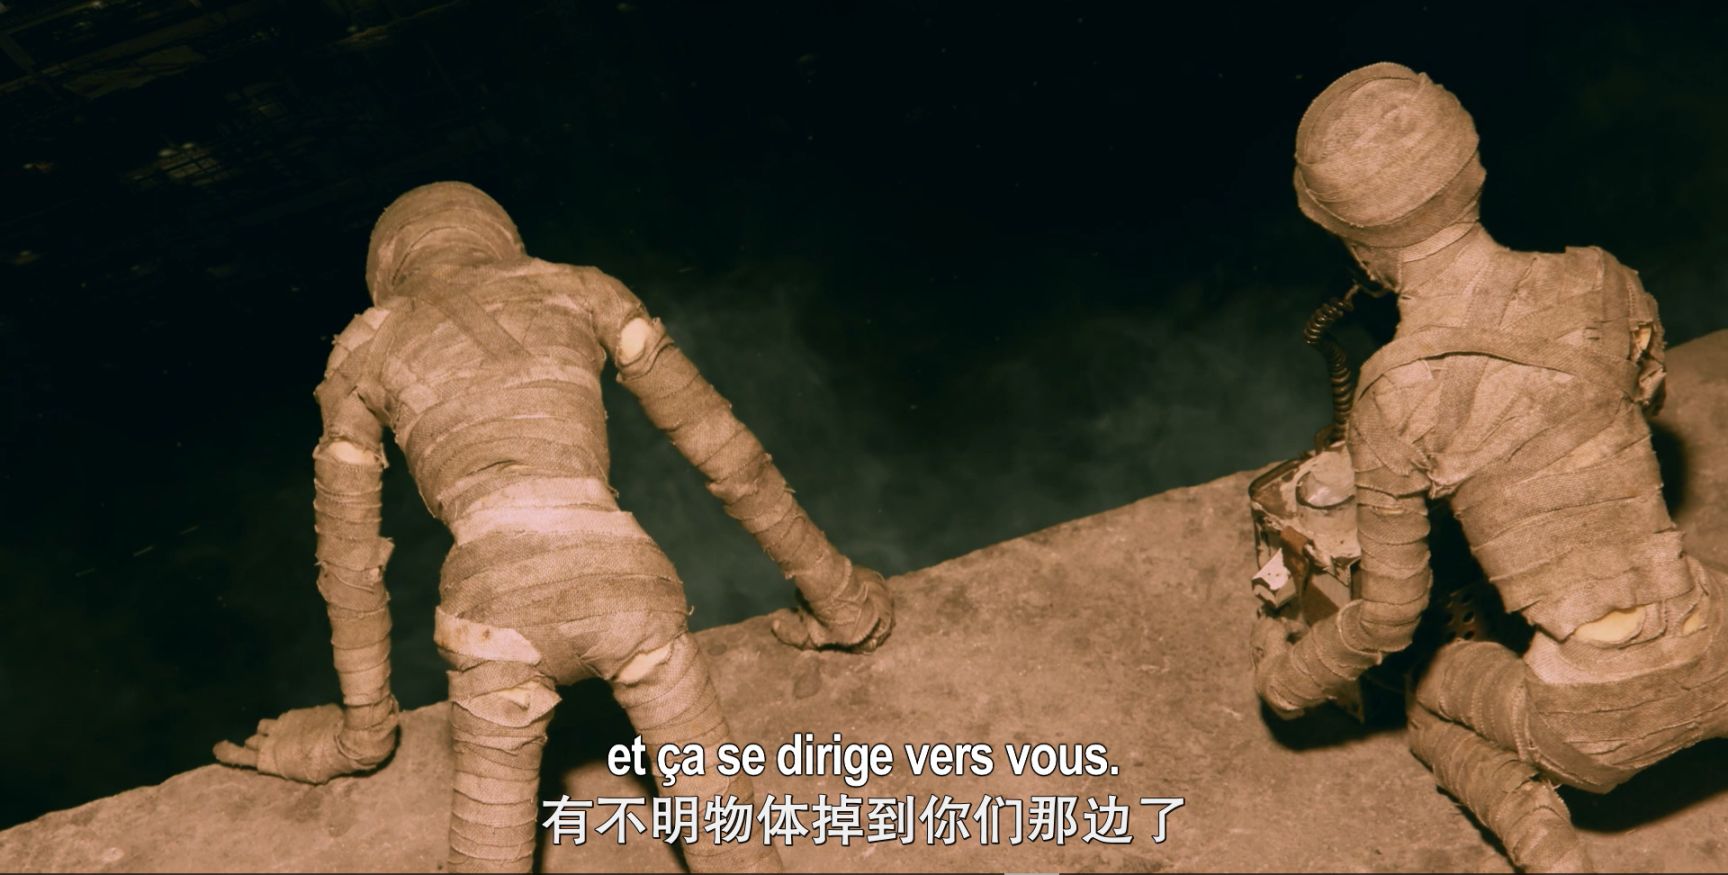 【影視動漫】科幻恐怖廢土定格動畫《廢頭》：被人工生命佔據的恐怖地底世界-第2張